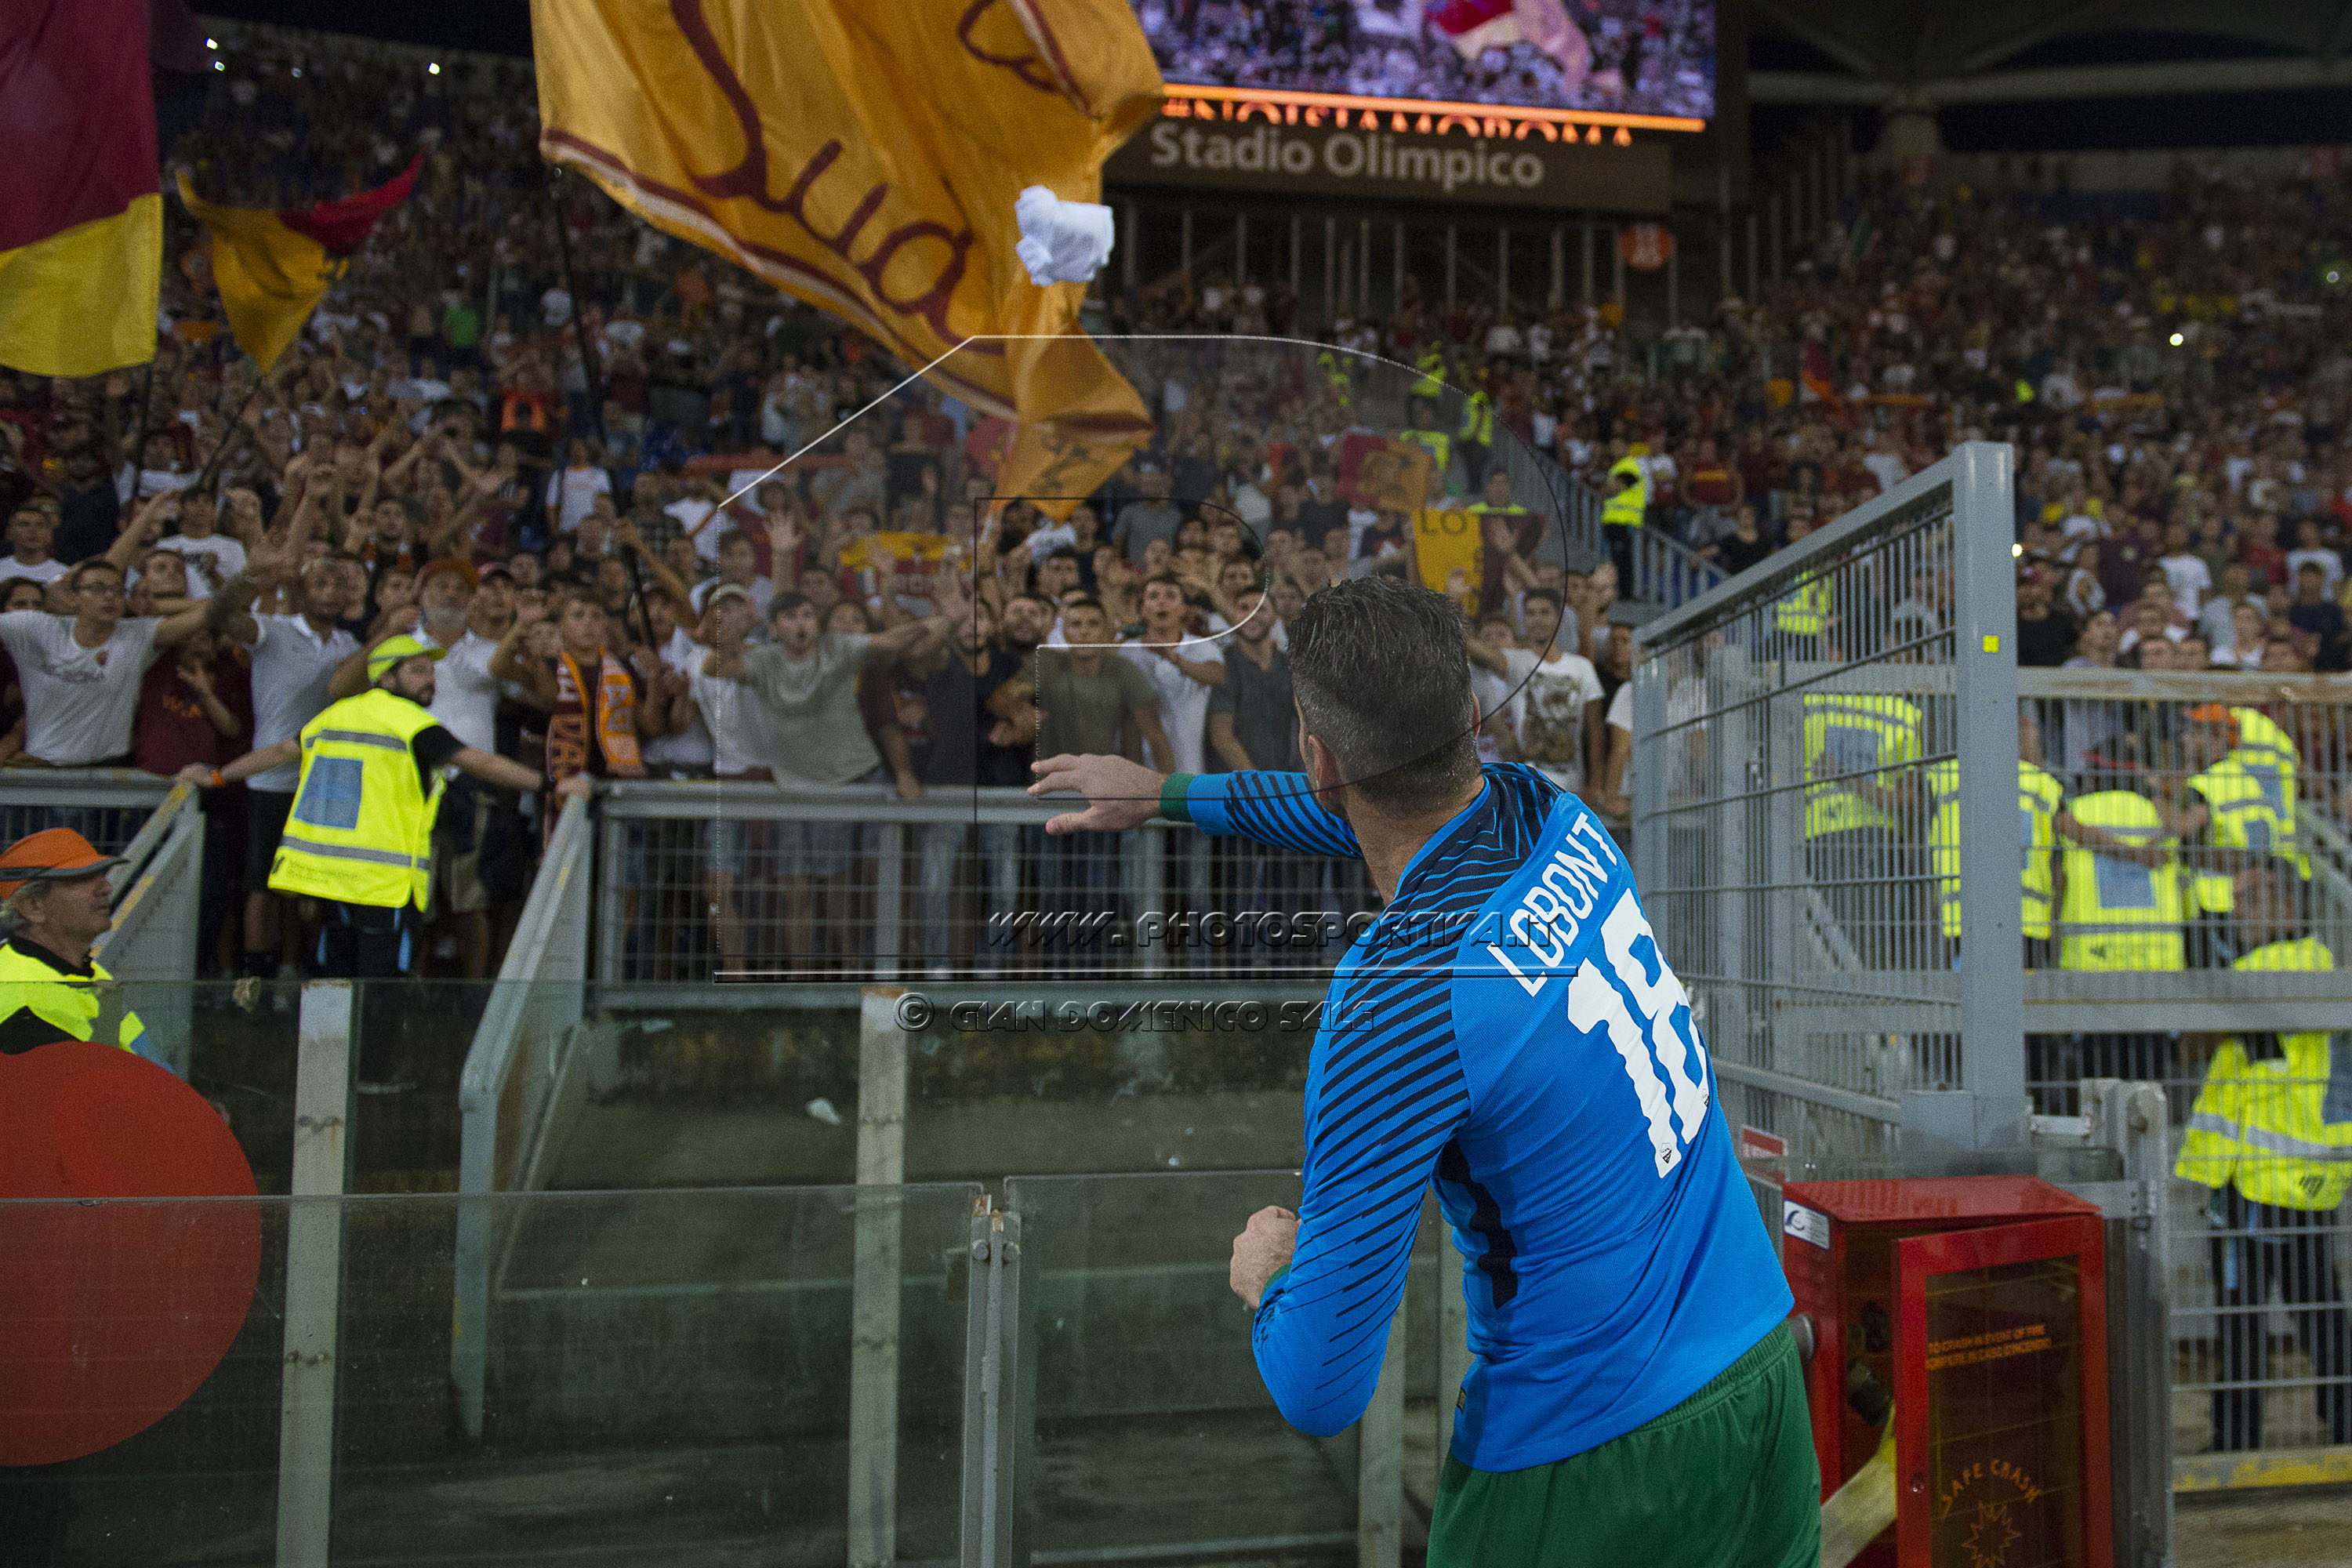 FOTOGALLERY: Amichevole Todosjuntos Roma-Chapecoense. Le emozioni del match negli scatti di GIAN DOMENICO SALE